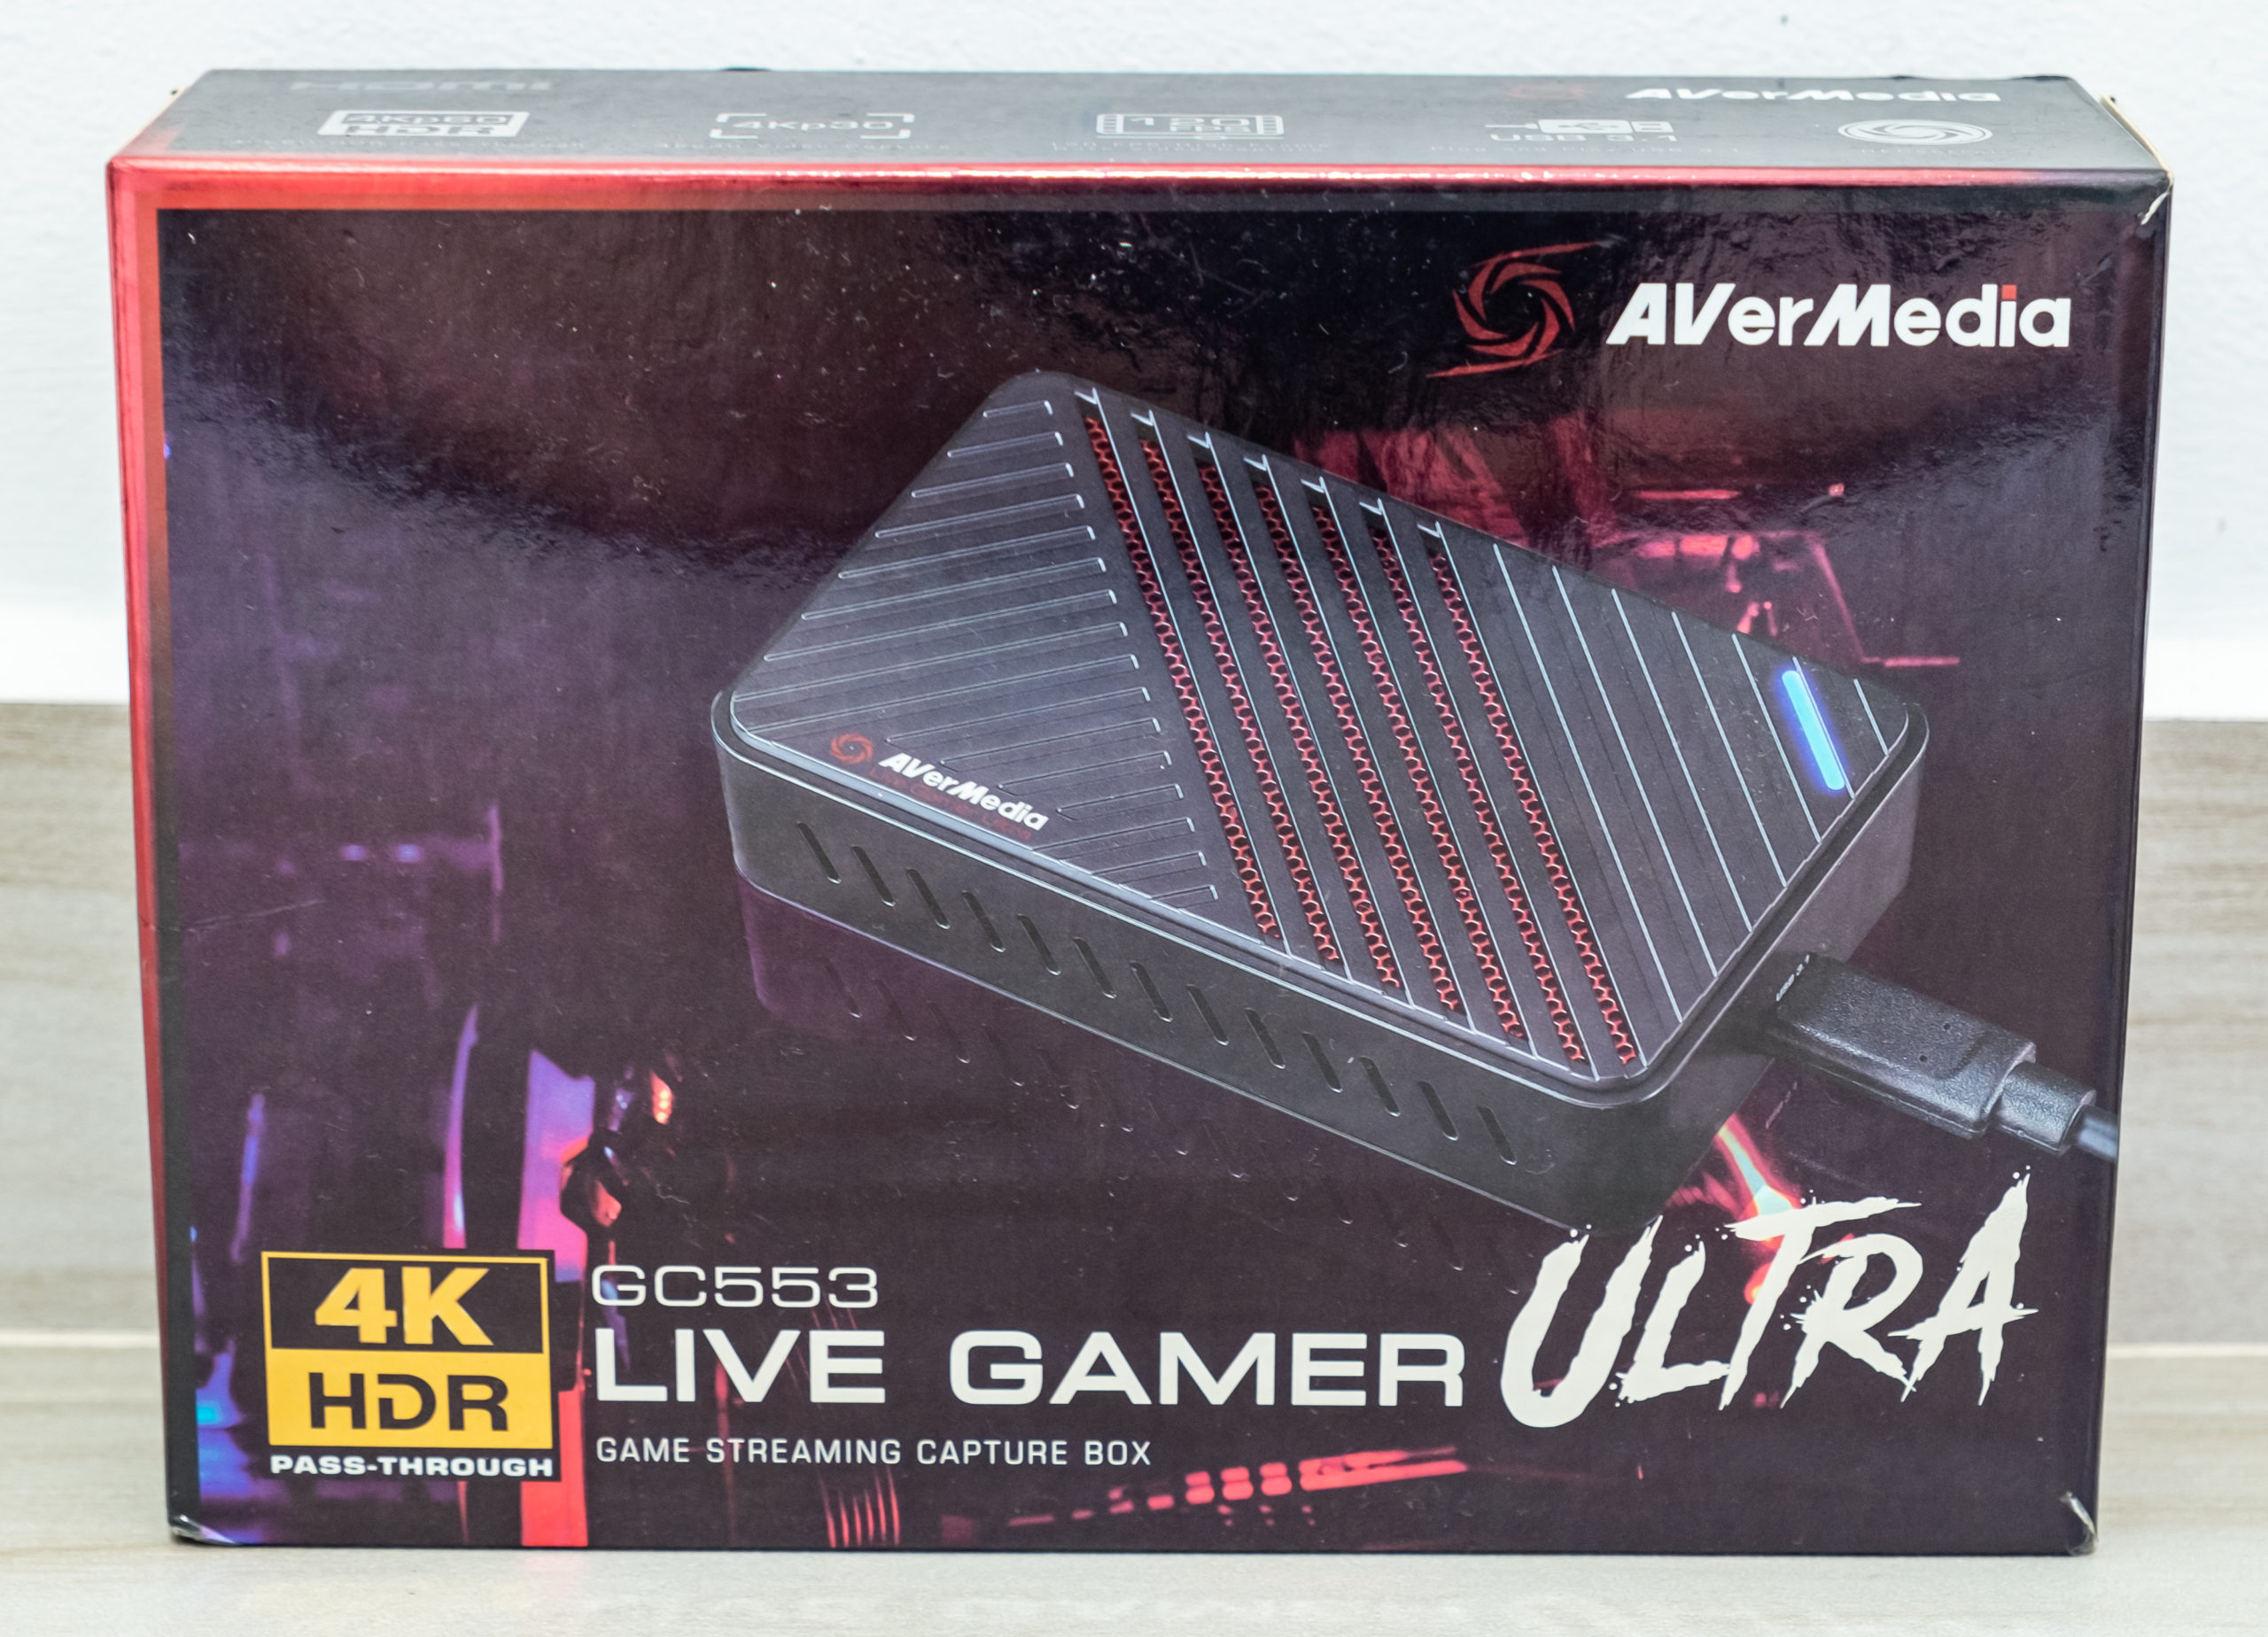 avermedia Live Gamer Ultra GC553